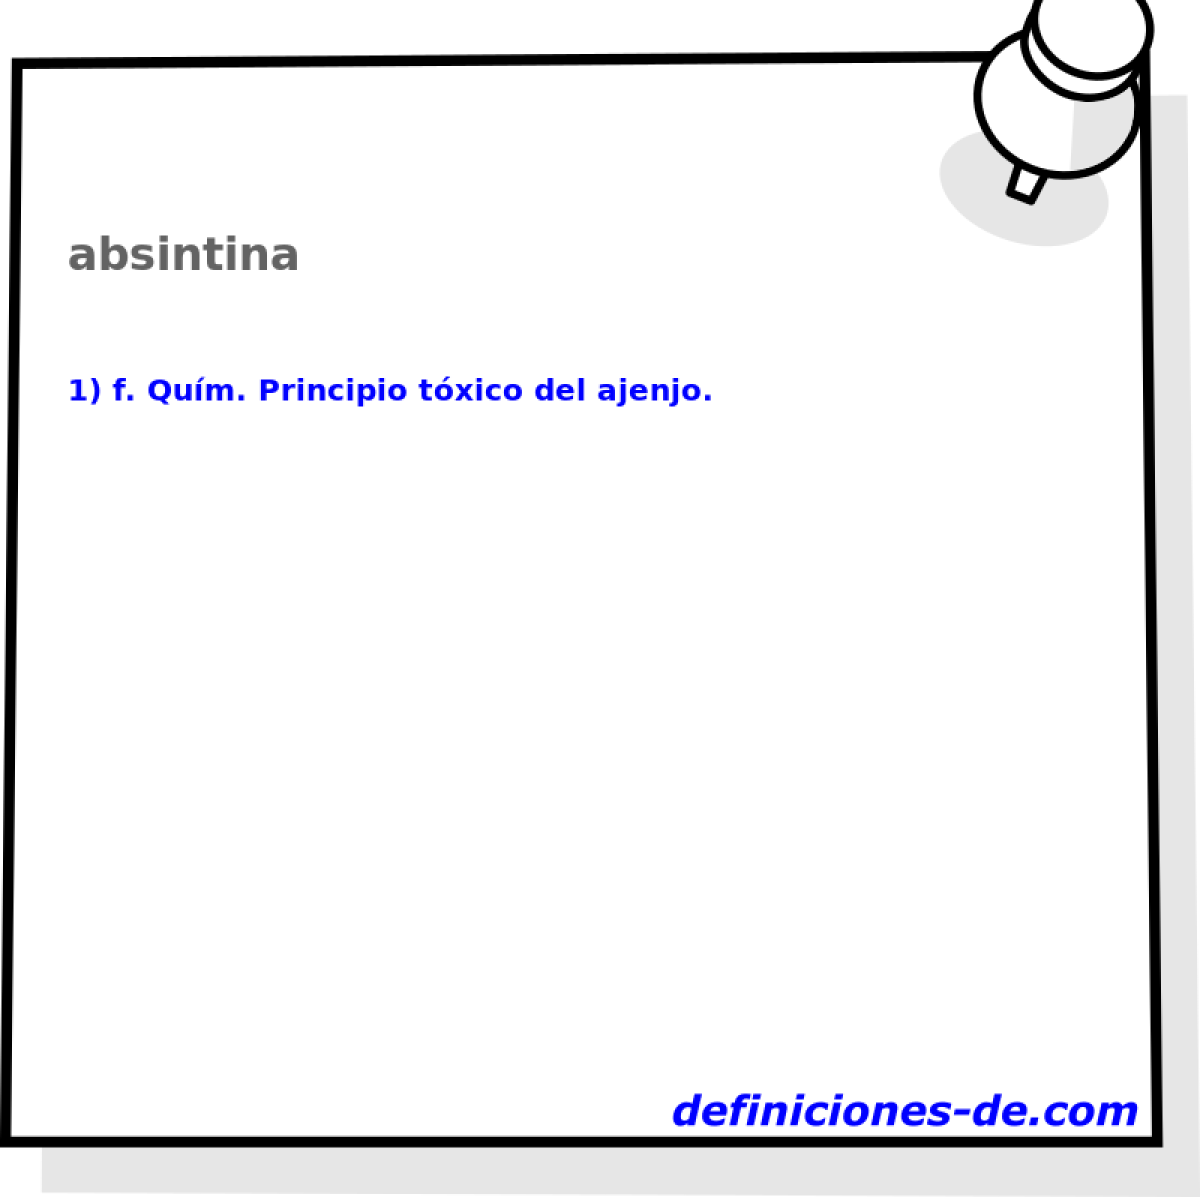 absintina 